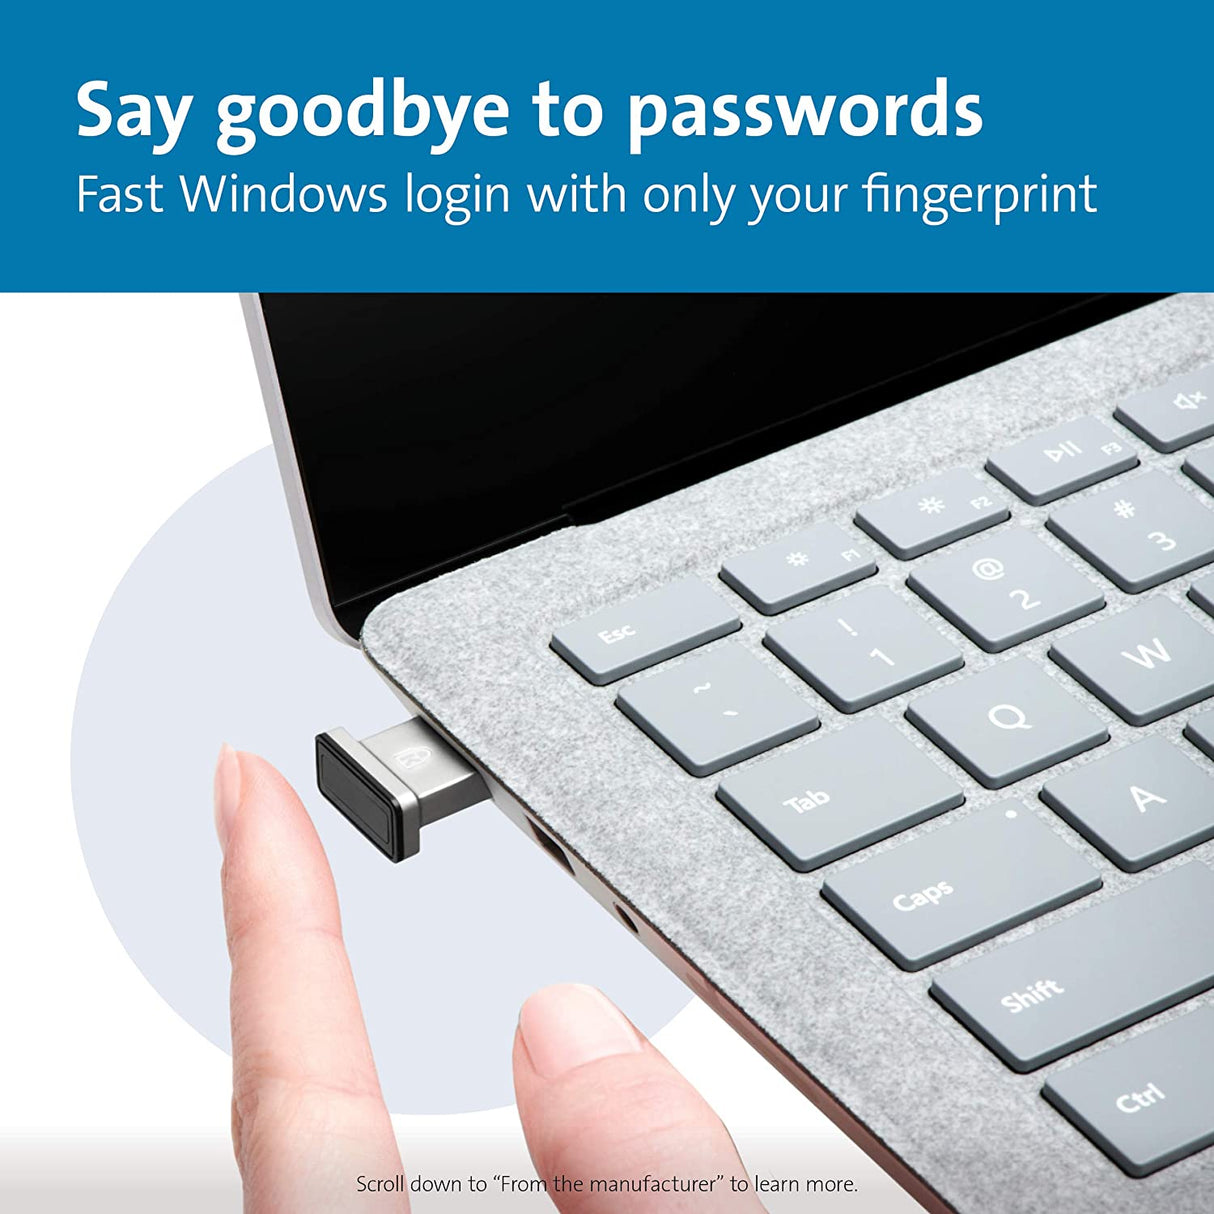 Kensington VeriMark IT Fingerprint Key - FIDO2/WebAuth, Windows Hello &amp; Windows Hello for Business, for Multiple pc's (K64704WW) For fingerprint